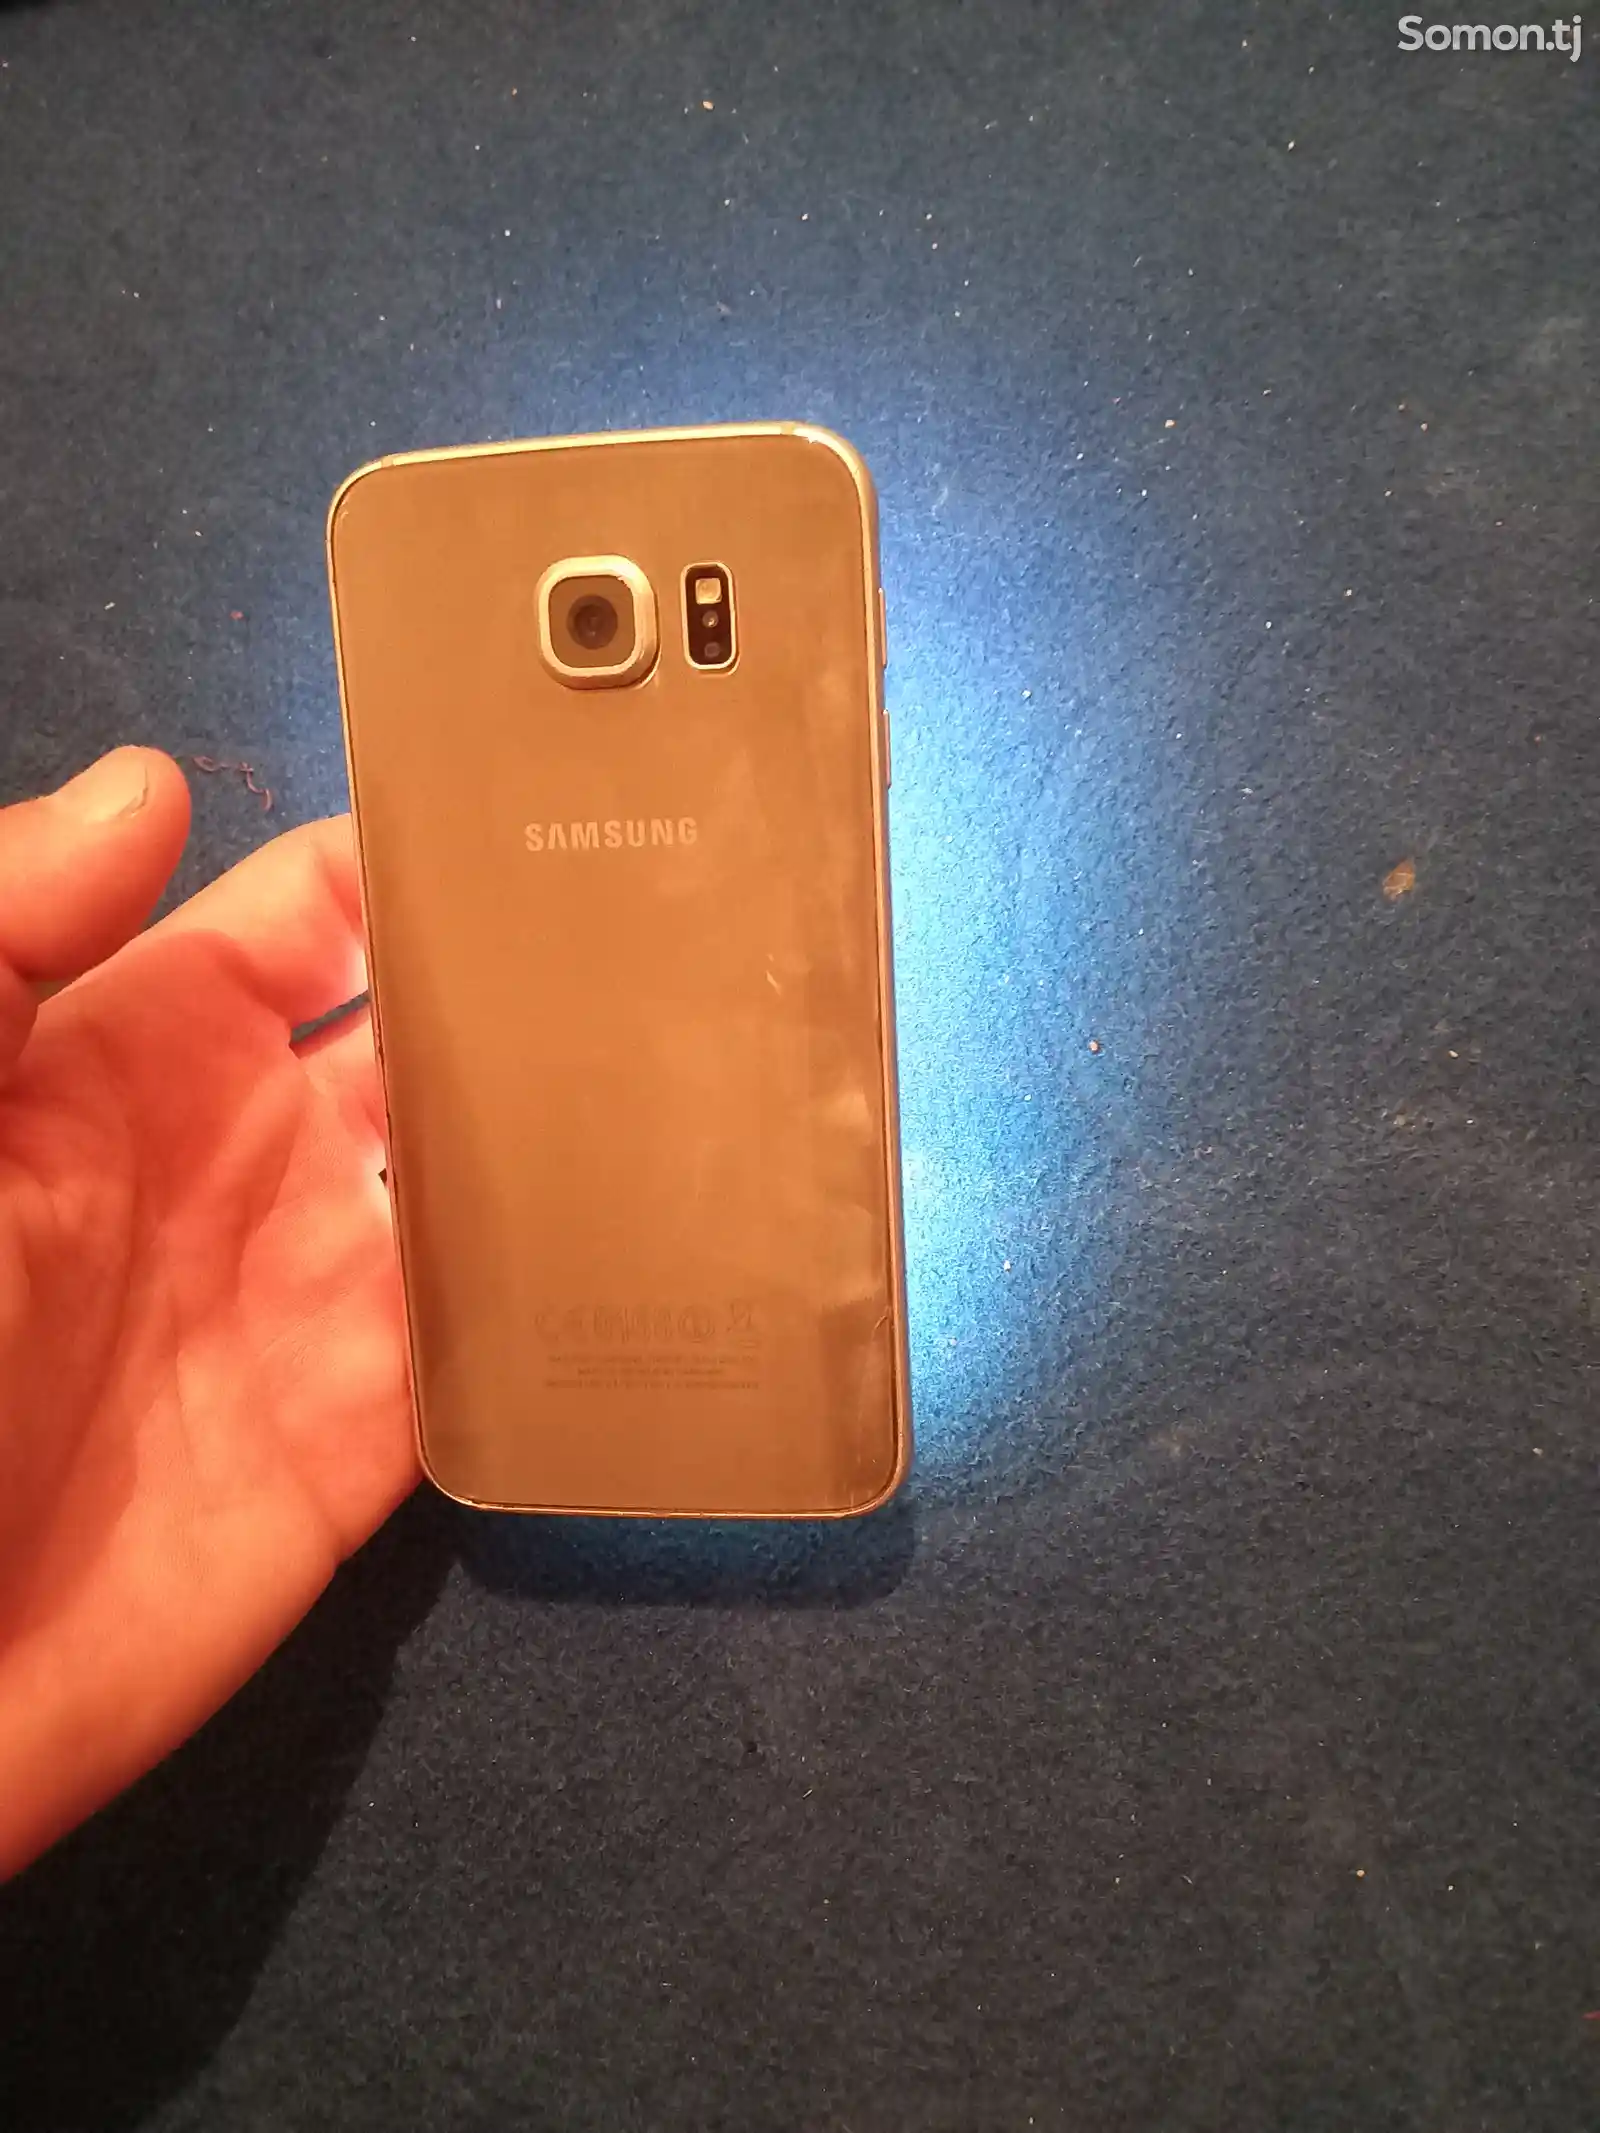 Samsung Galaxy s6-1